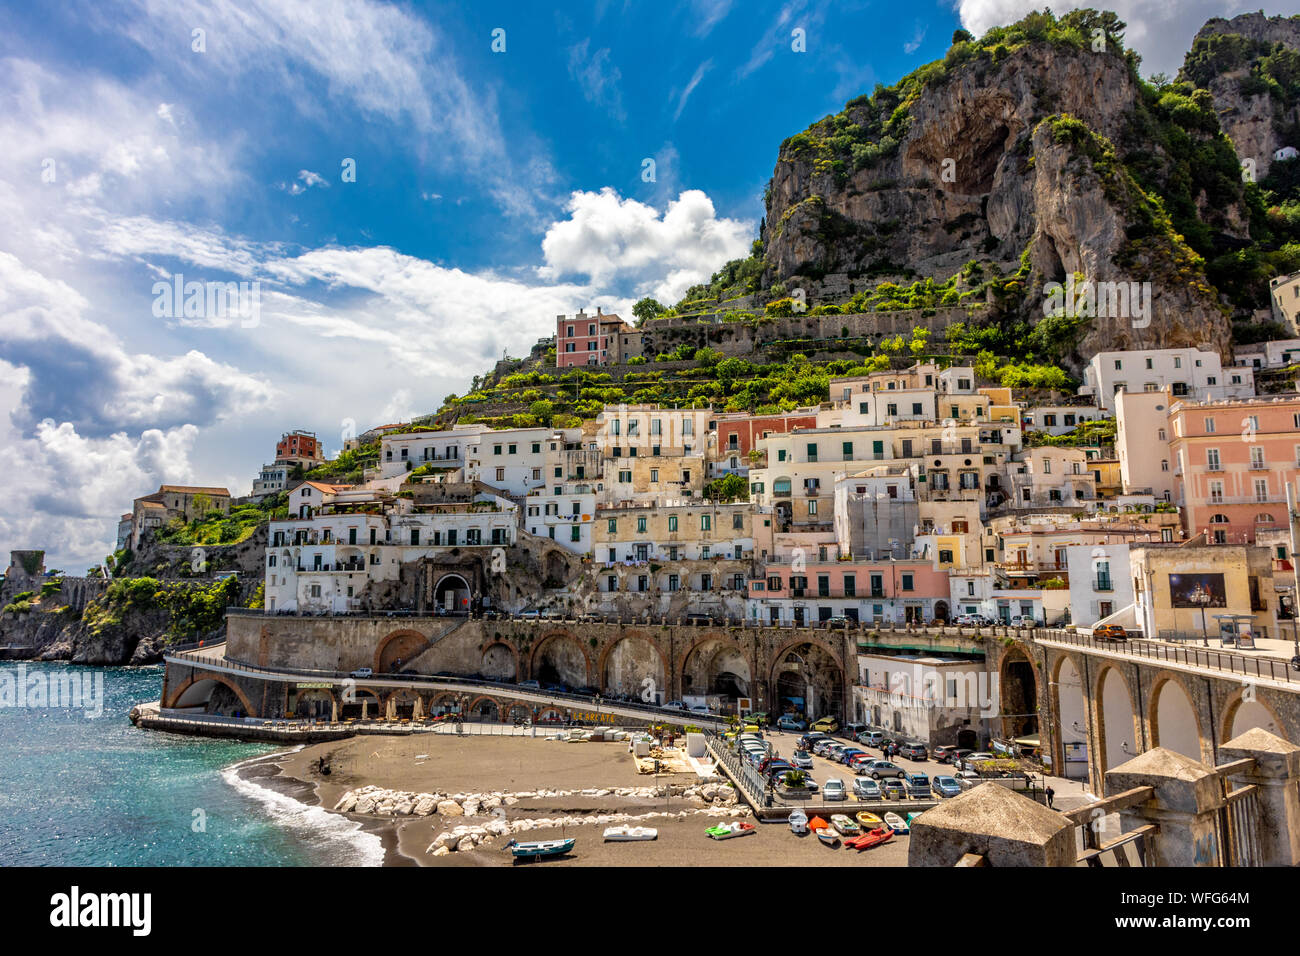 L'Italia, Atrani, Amalfi Coast, panorama sulla spiaggia Foto Stock